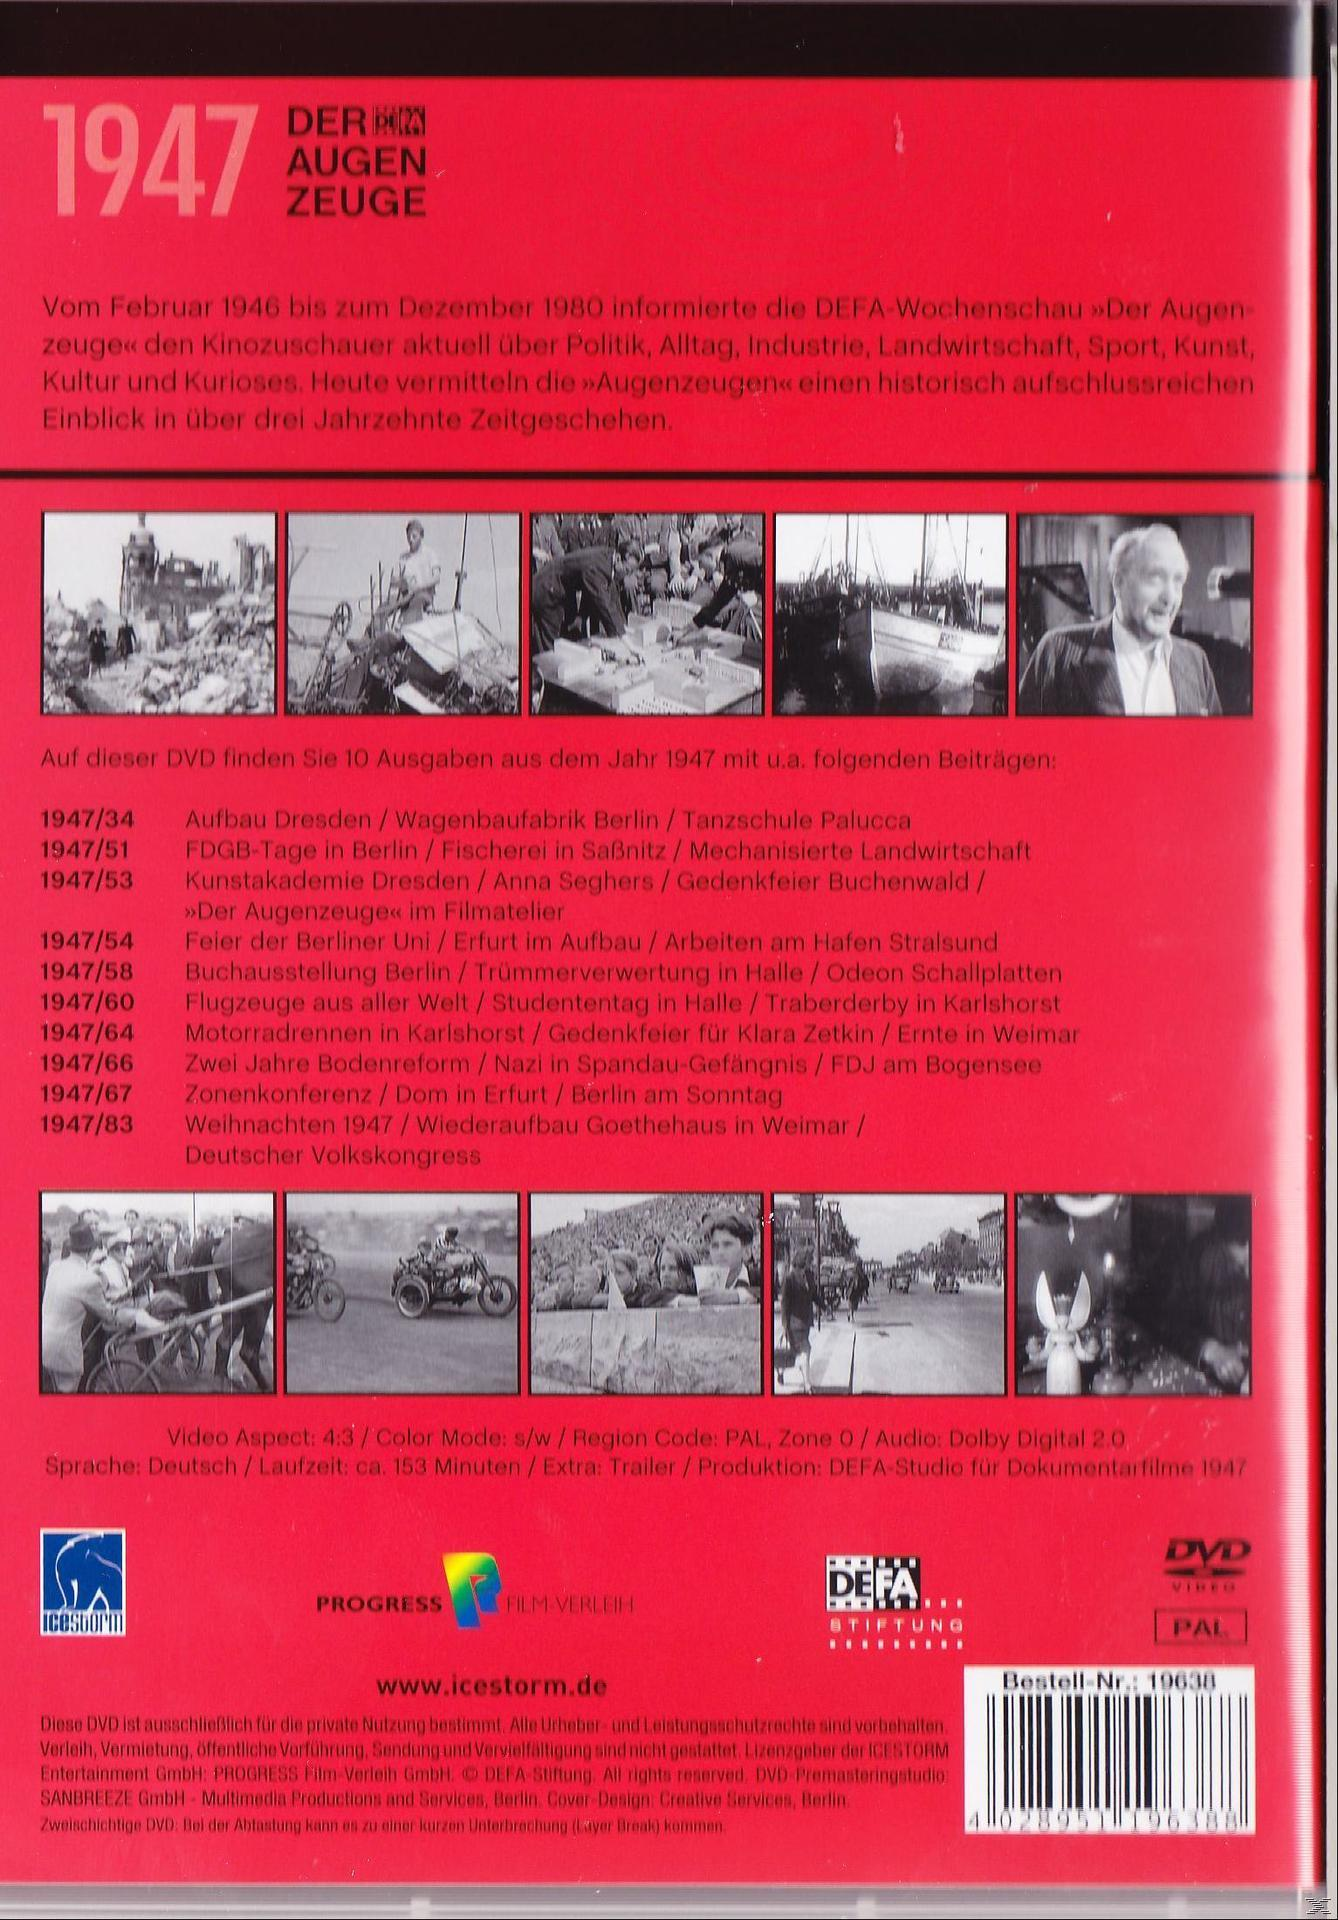 Augenzeuge Der 1947 DVD